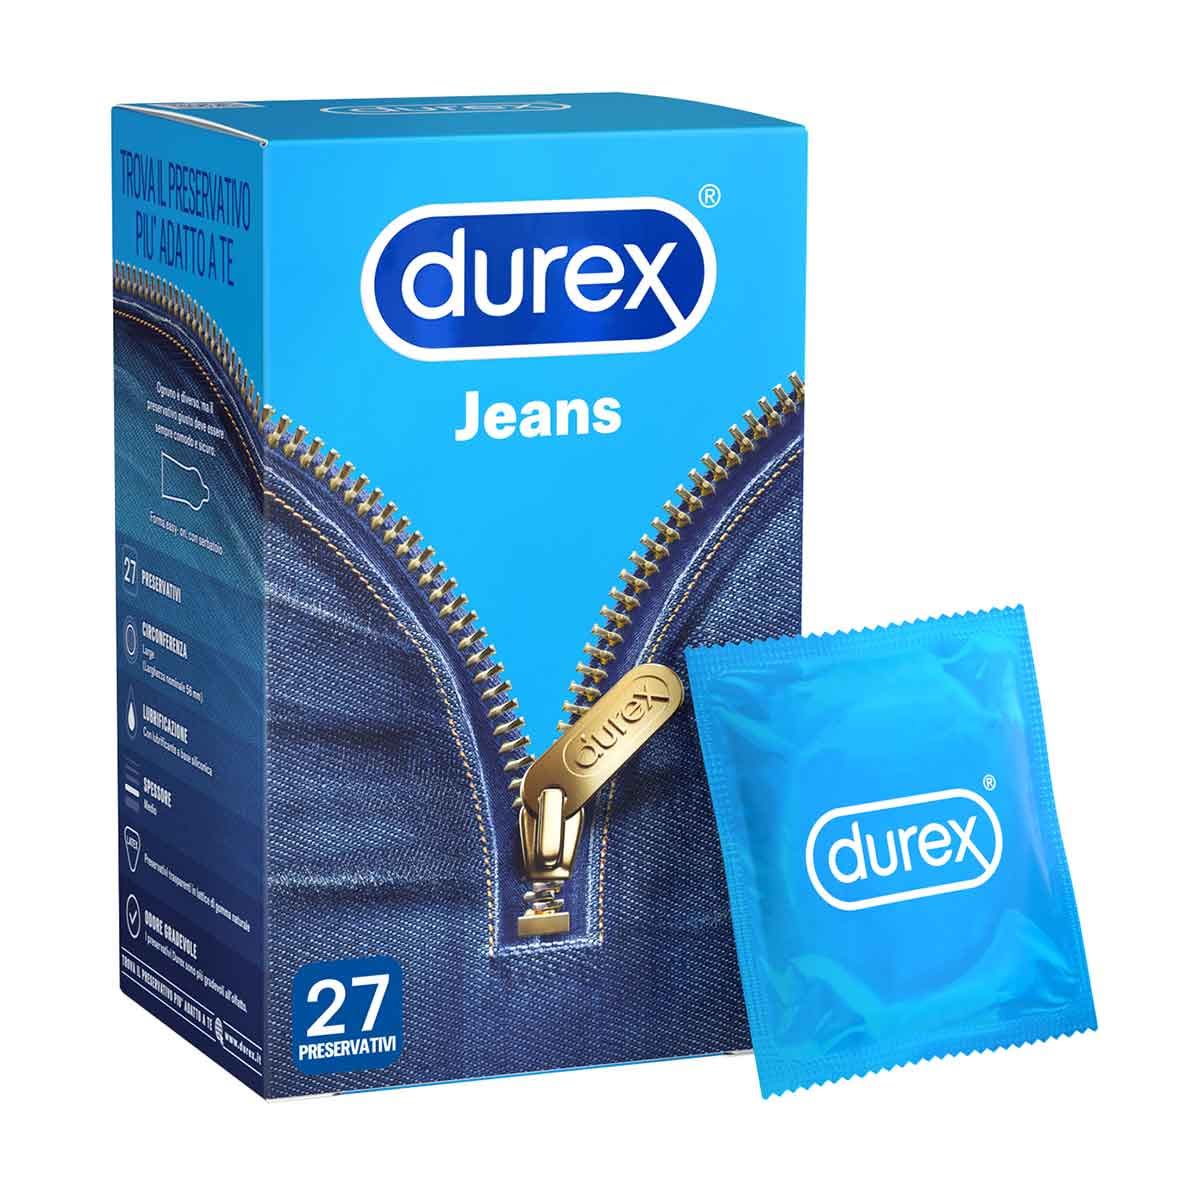 982282675 - Durex Jeans Profilattici 27 pezzi - 4738279_2.jpg